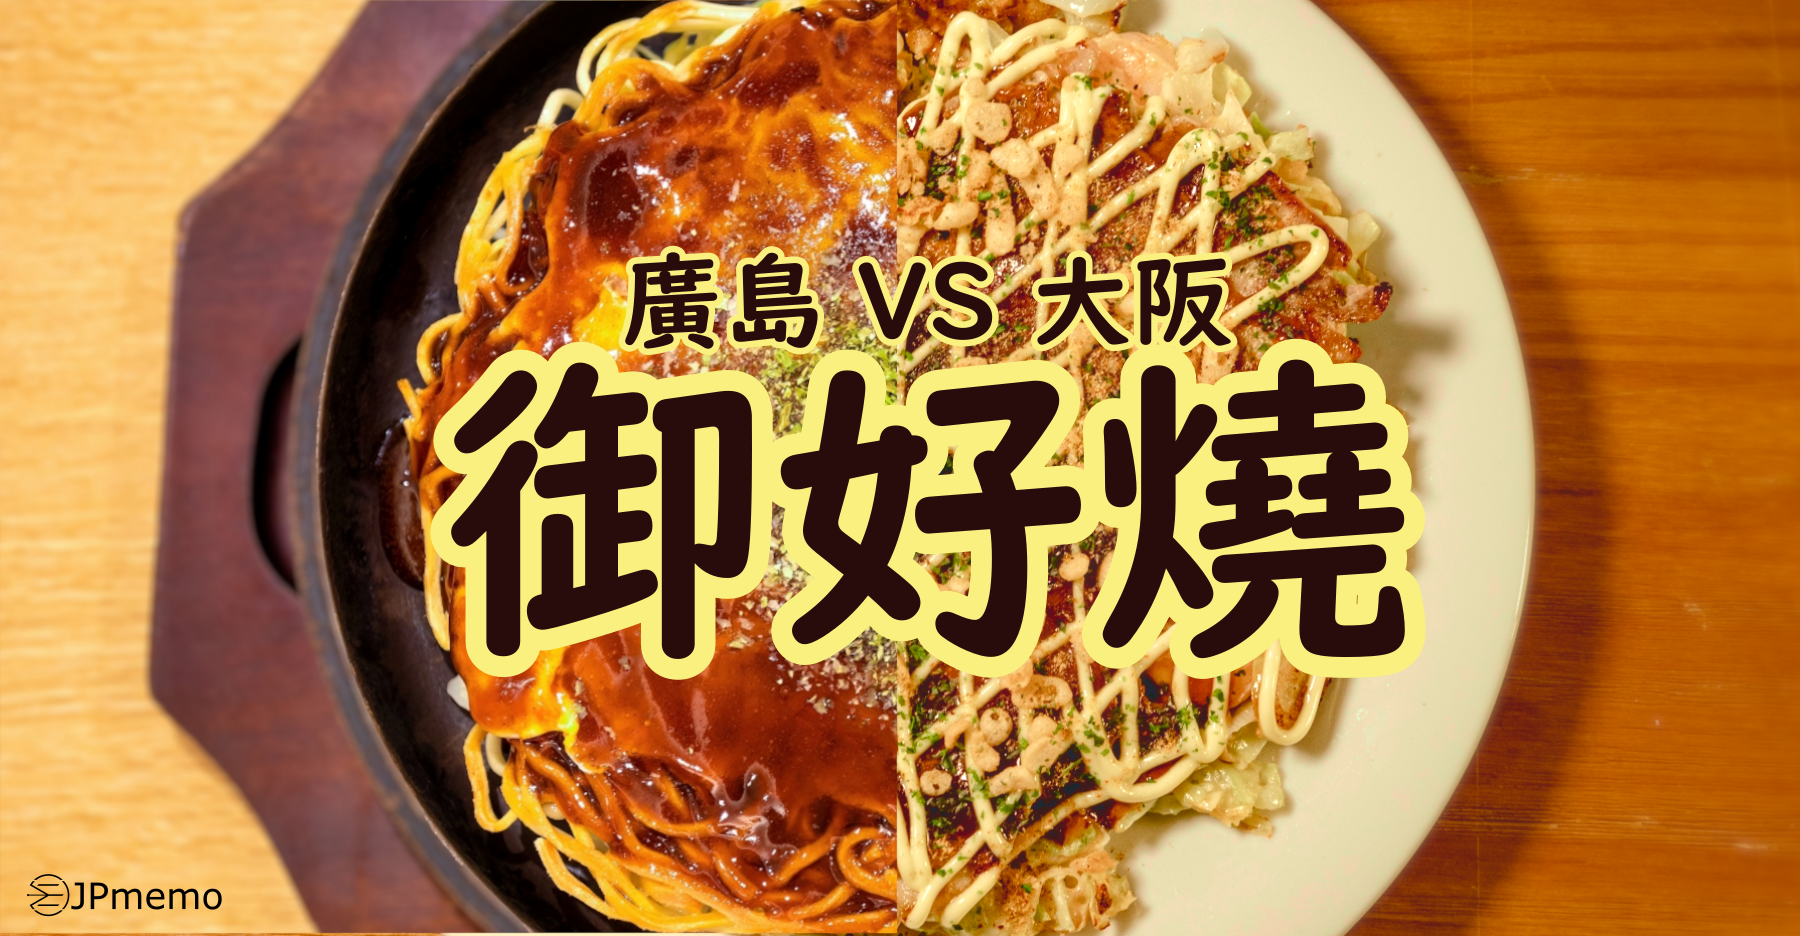 jpmemo-okonomiyaki